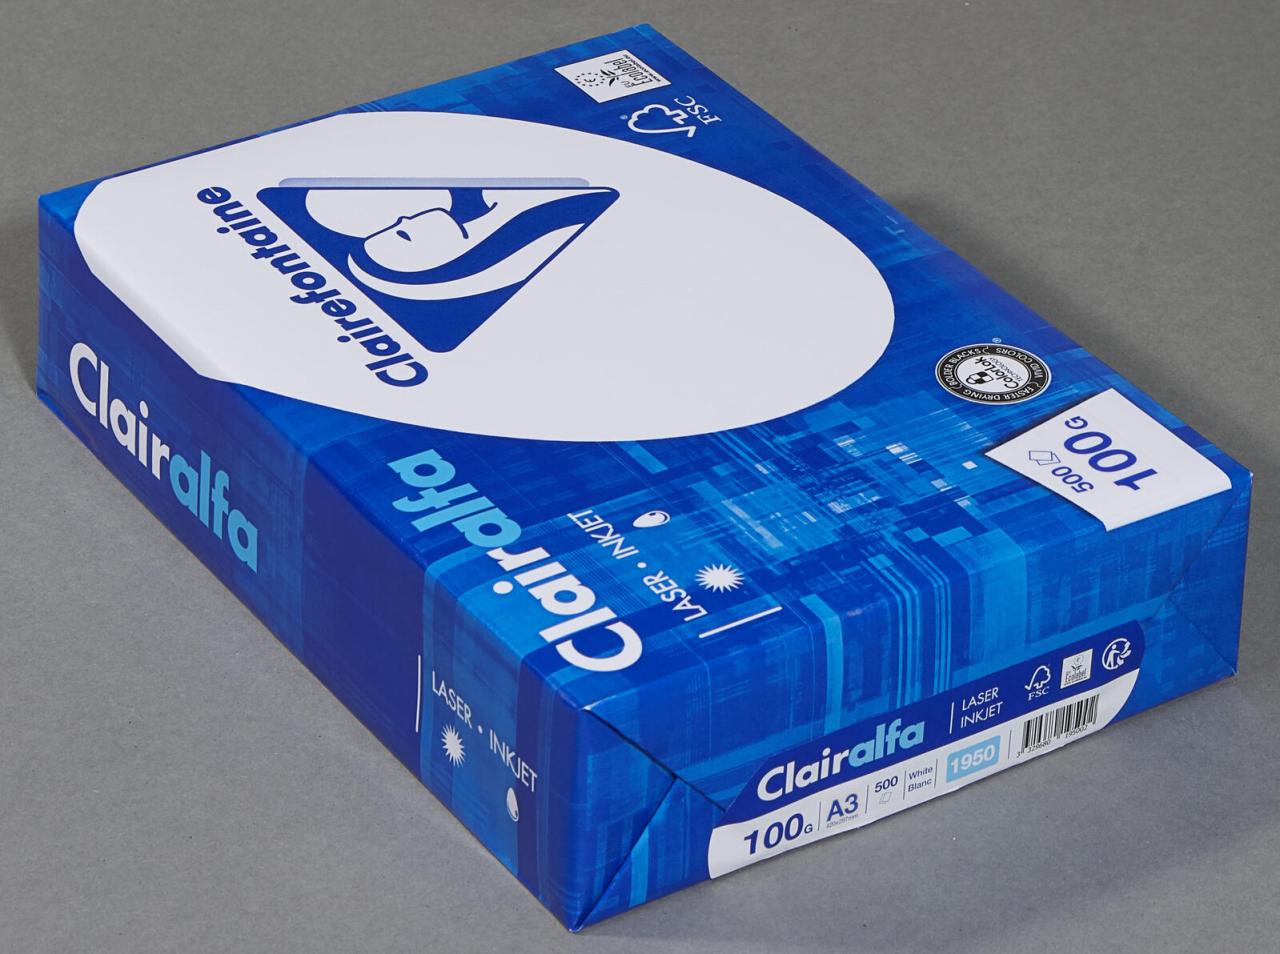 Clairefontaine Kopierpapier CF Clairalfa,A3,100g,500 Blatt DIN A3 100 g/m² von Clairefontaine